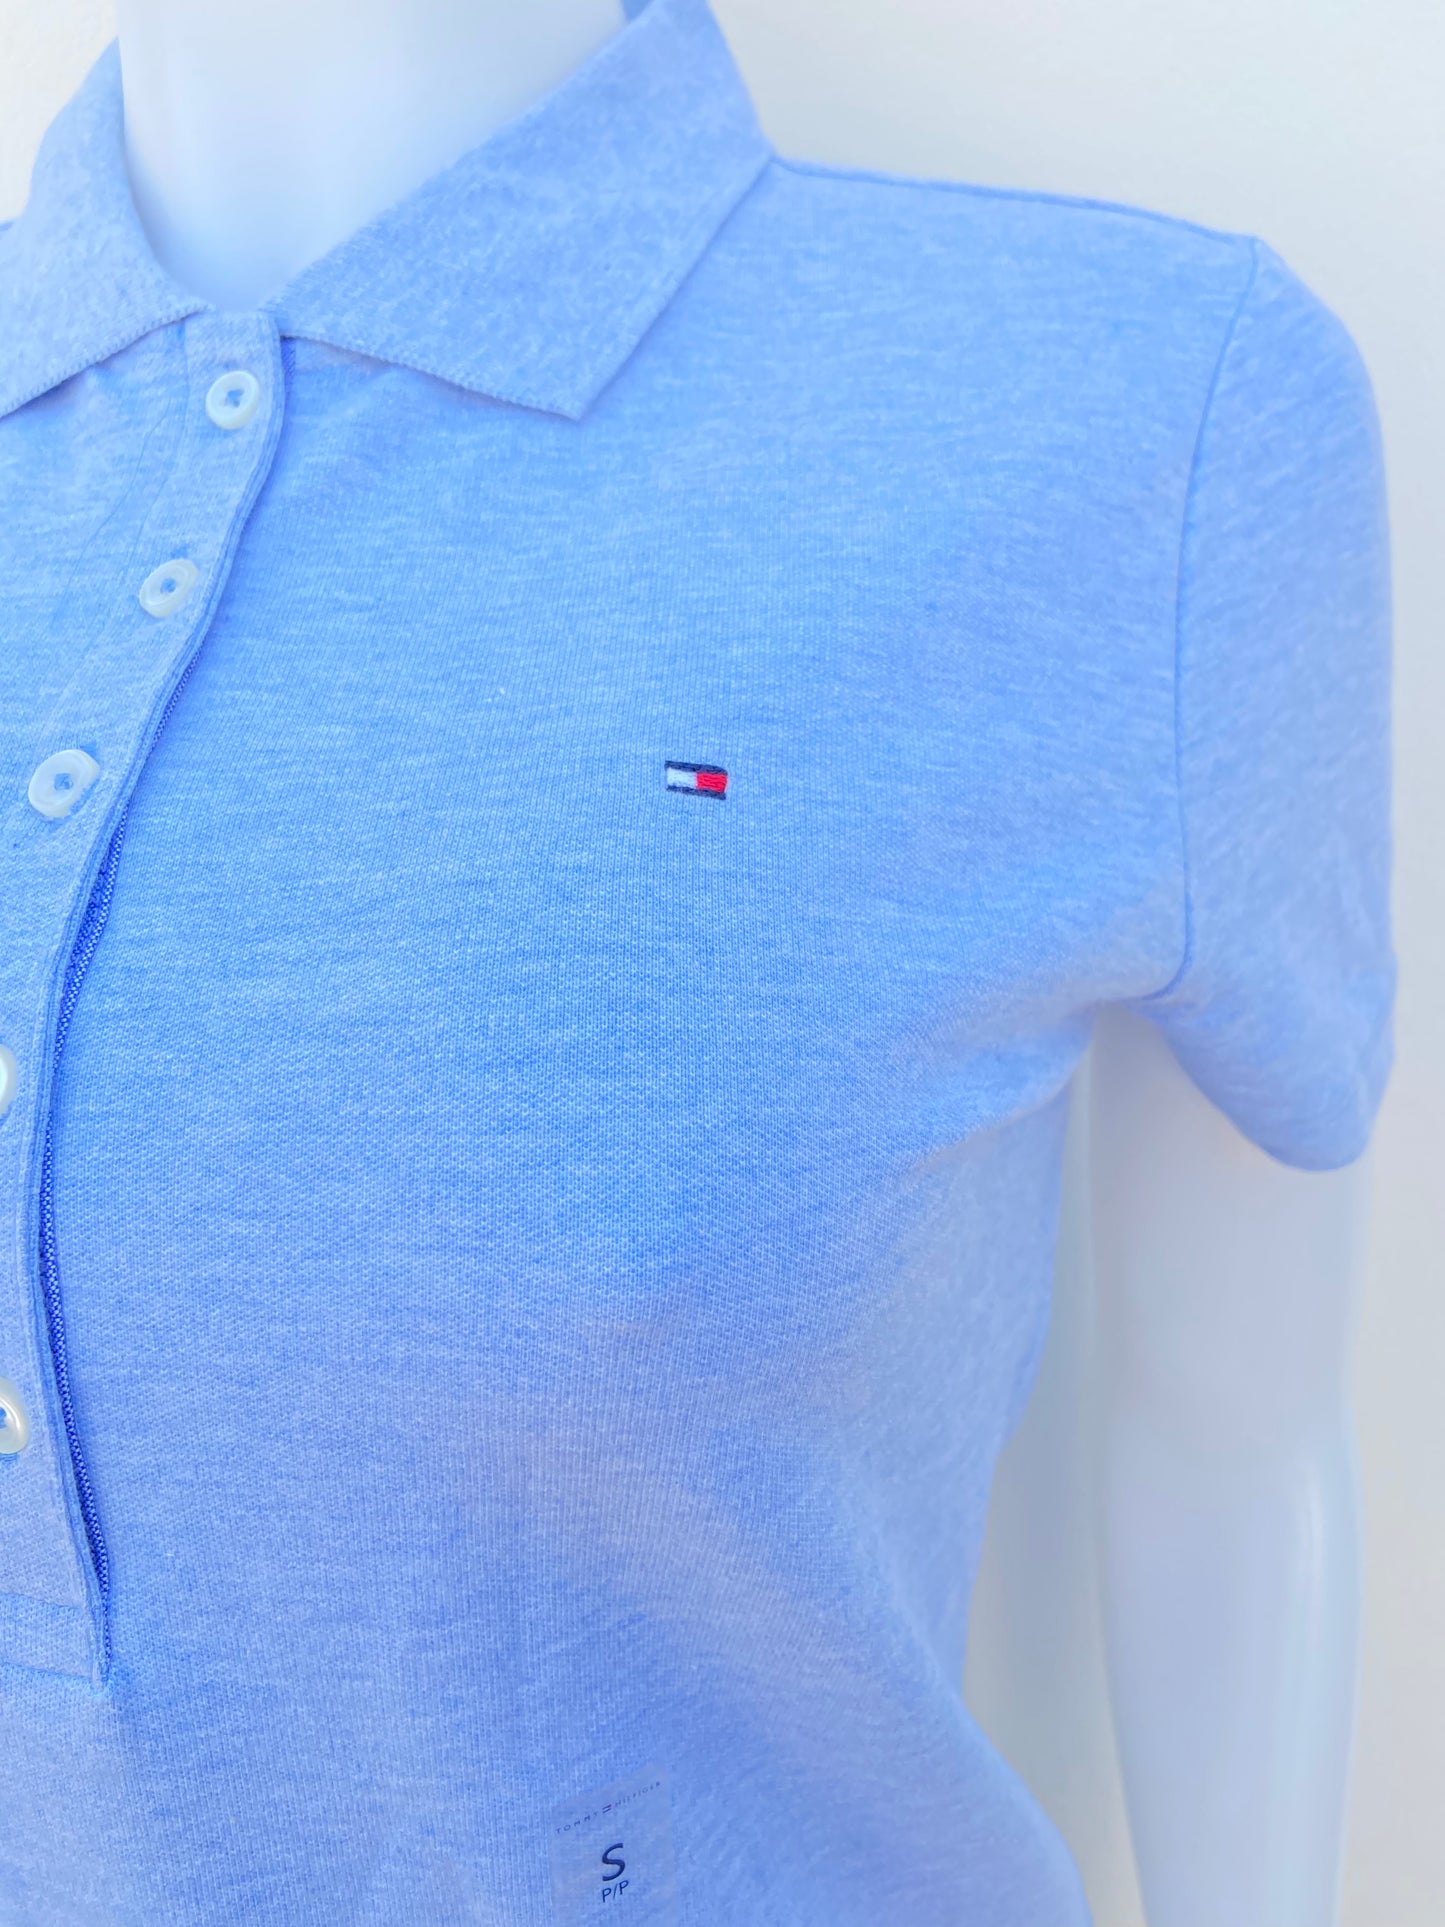 Polocher Tommy Hilfiger original azul claro, estilo degradado, con botones y logotipo de la marca al lado.